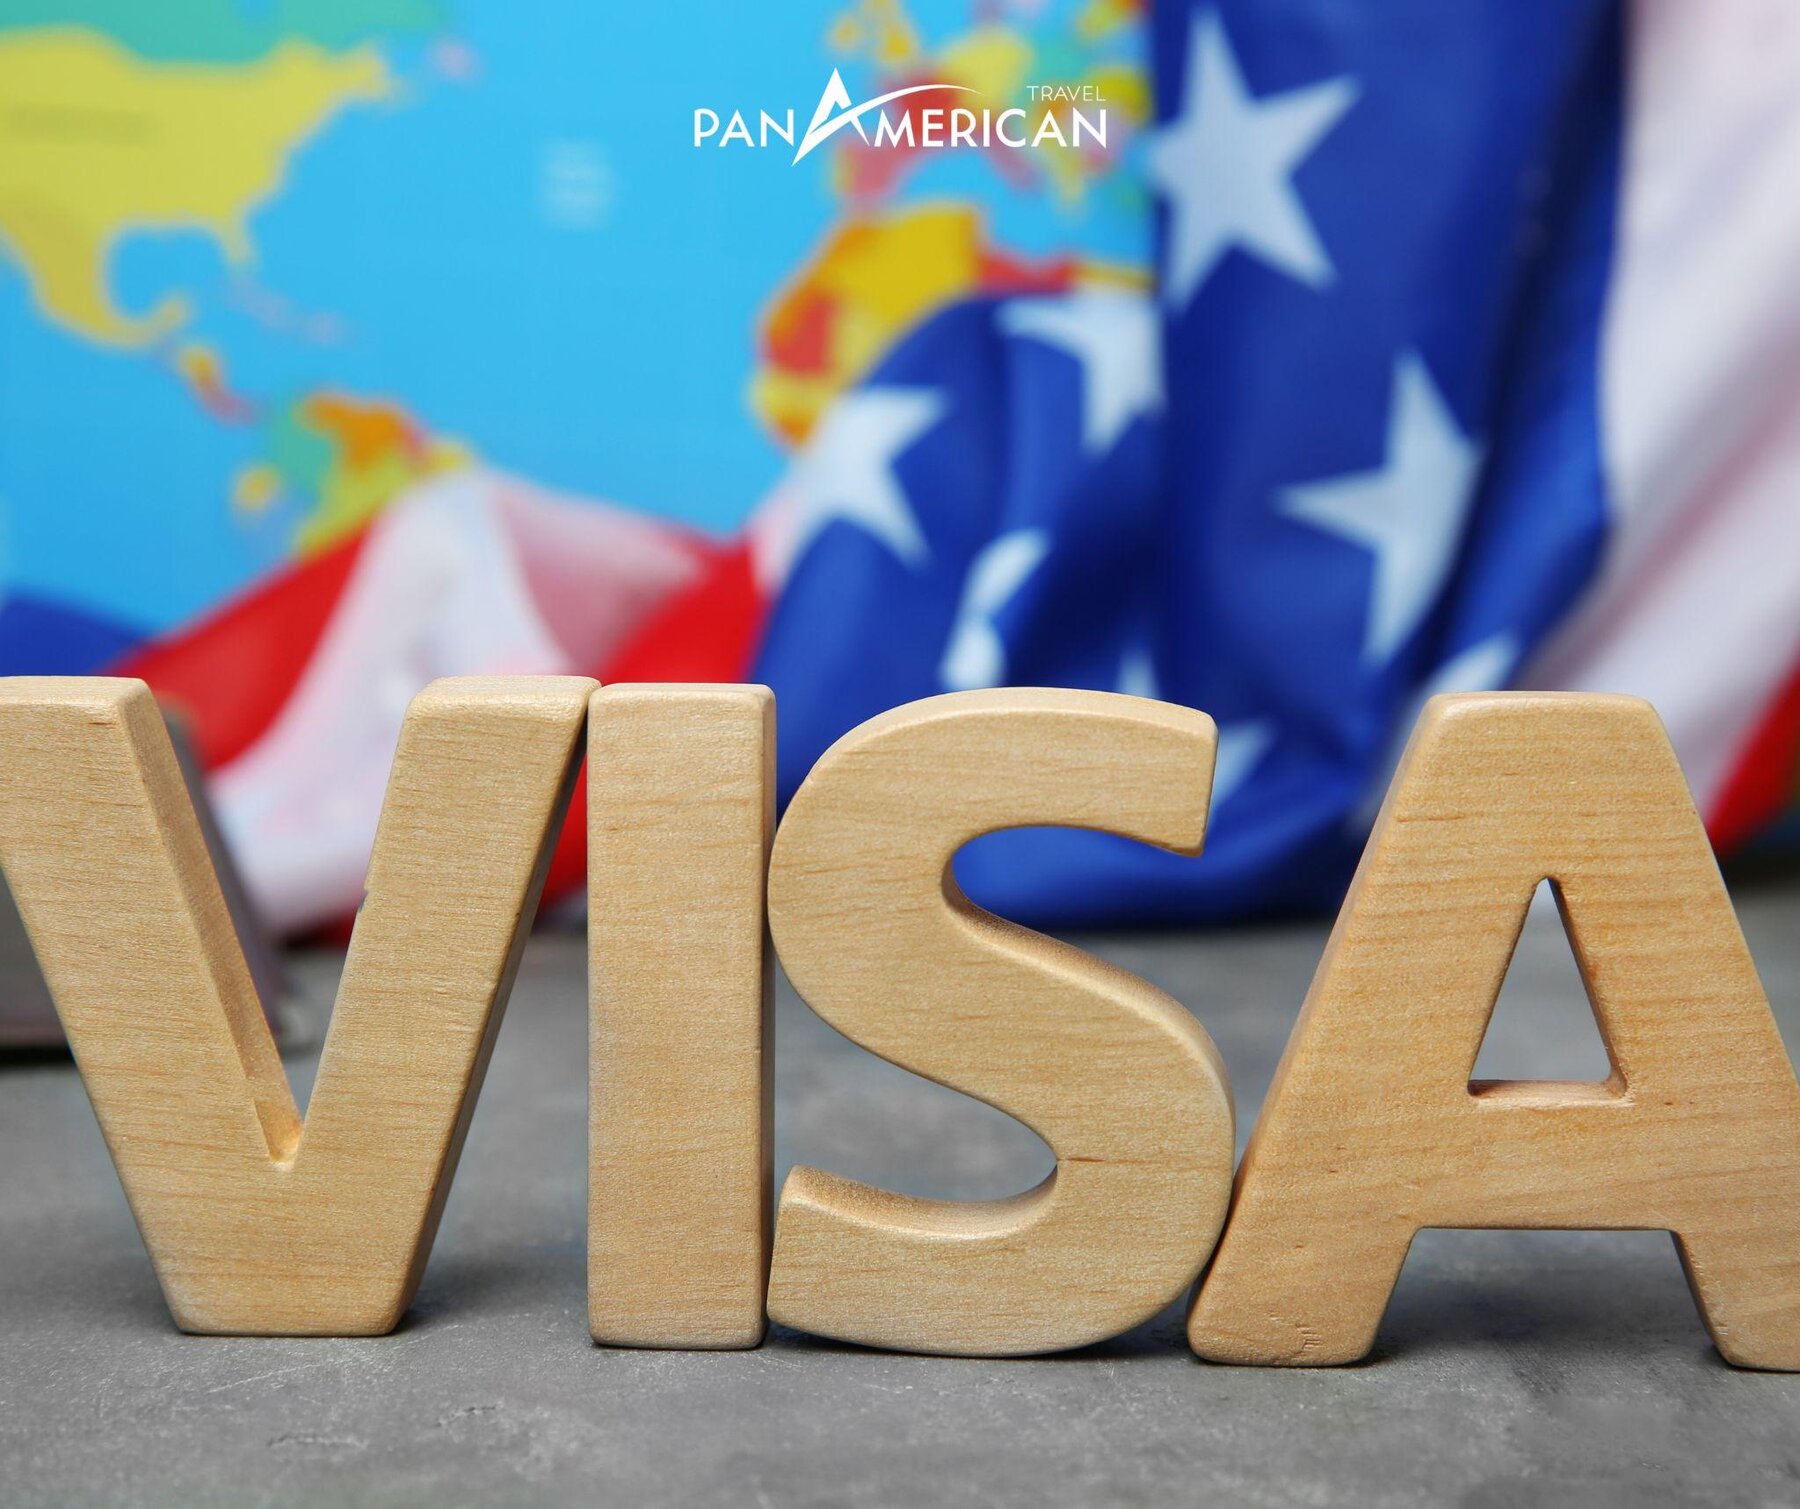 Lựa chọn đơn vị uy tín để được tư vấn hồ sơ visa Mỹ tốt nhất